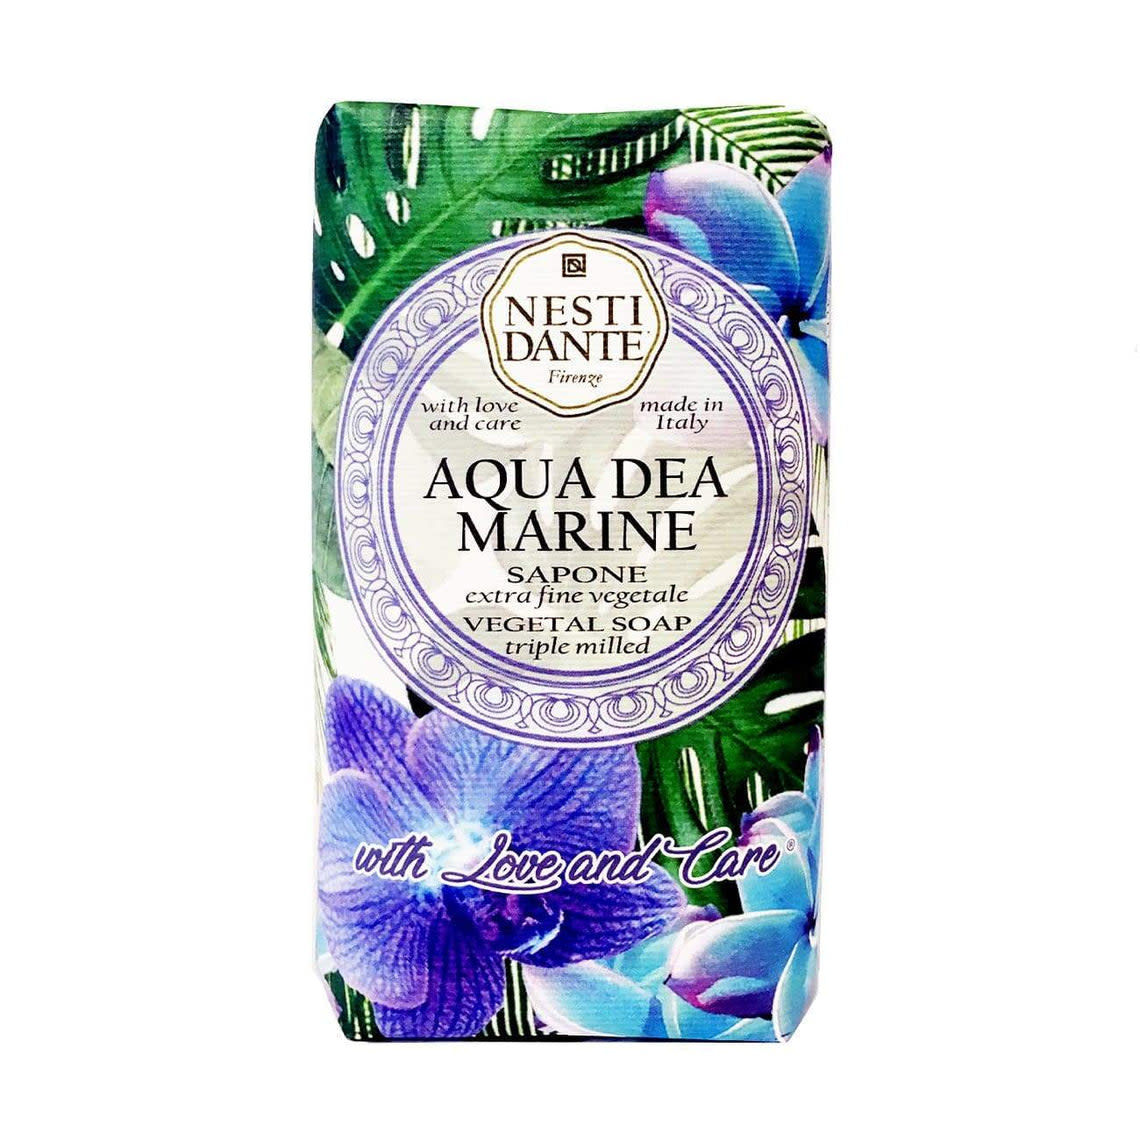 Aqua Dea Marine Soap